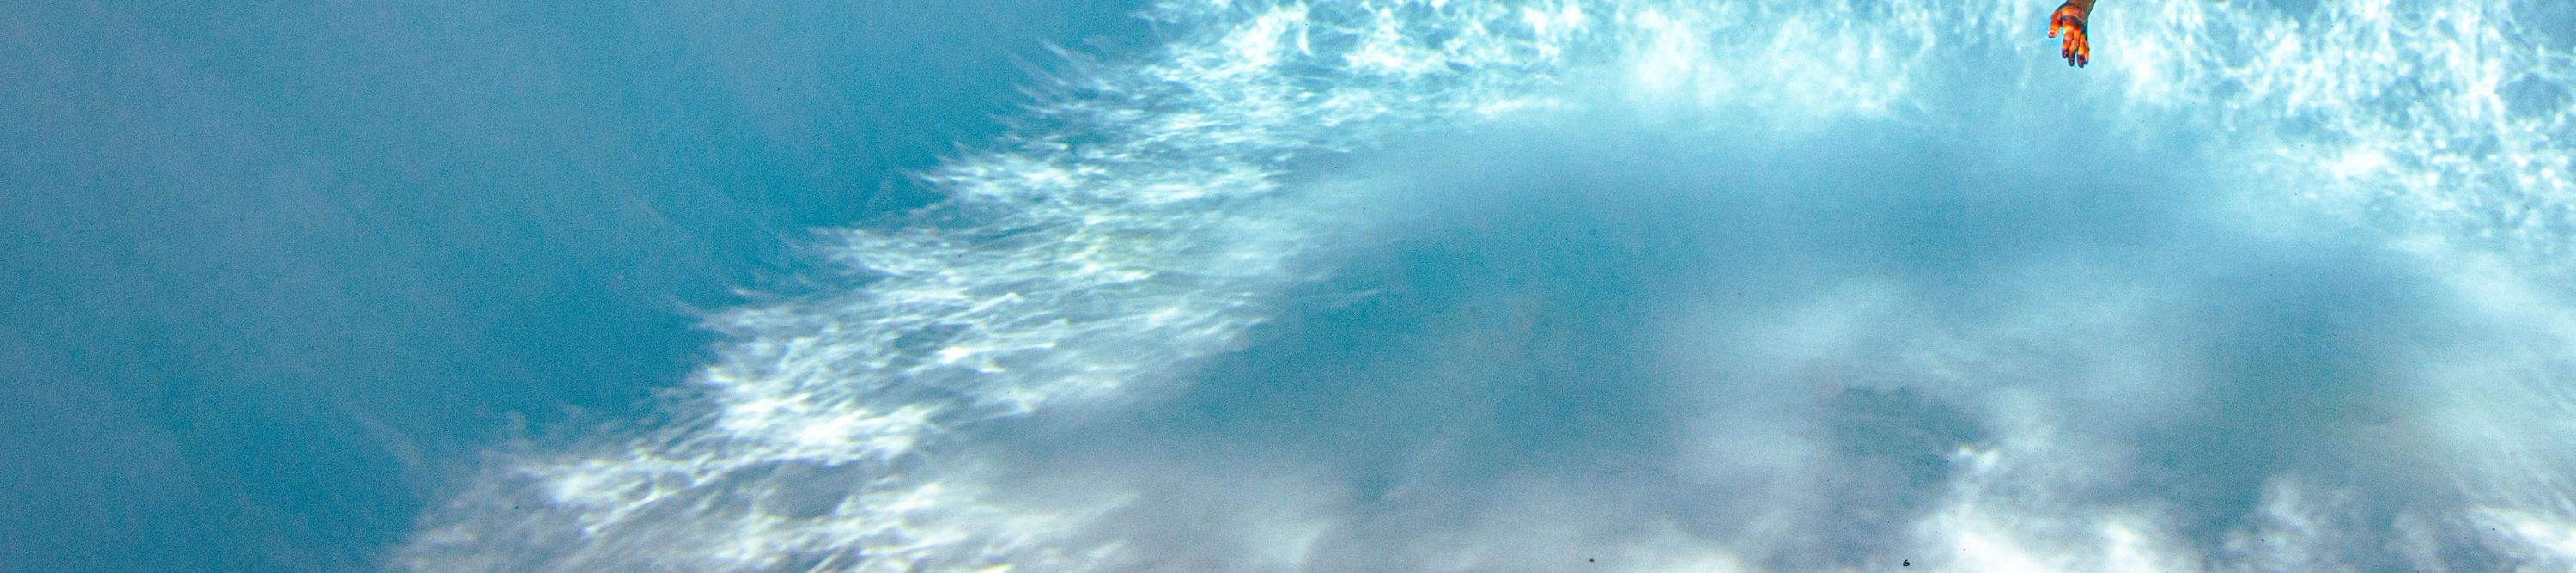 亞庇國際潛水學校SSI美人魚潛水課程